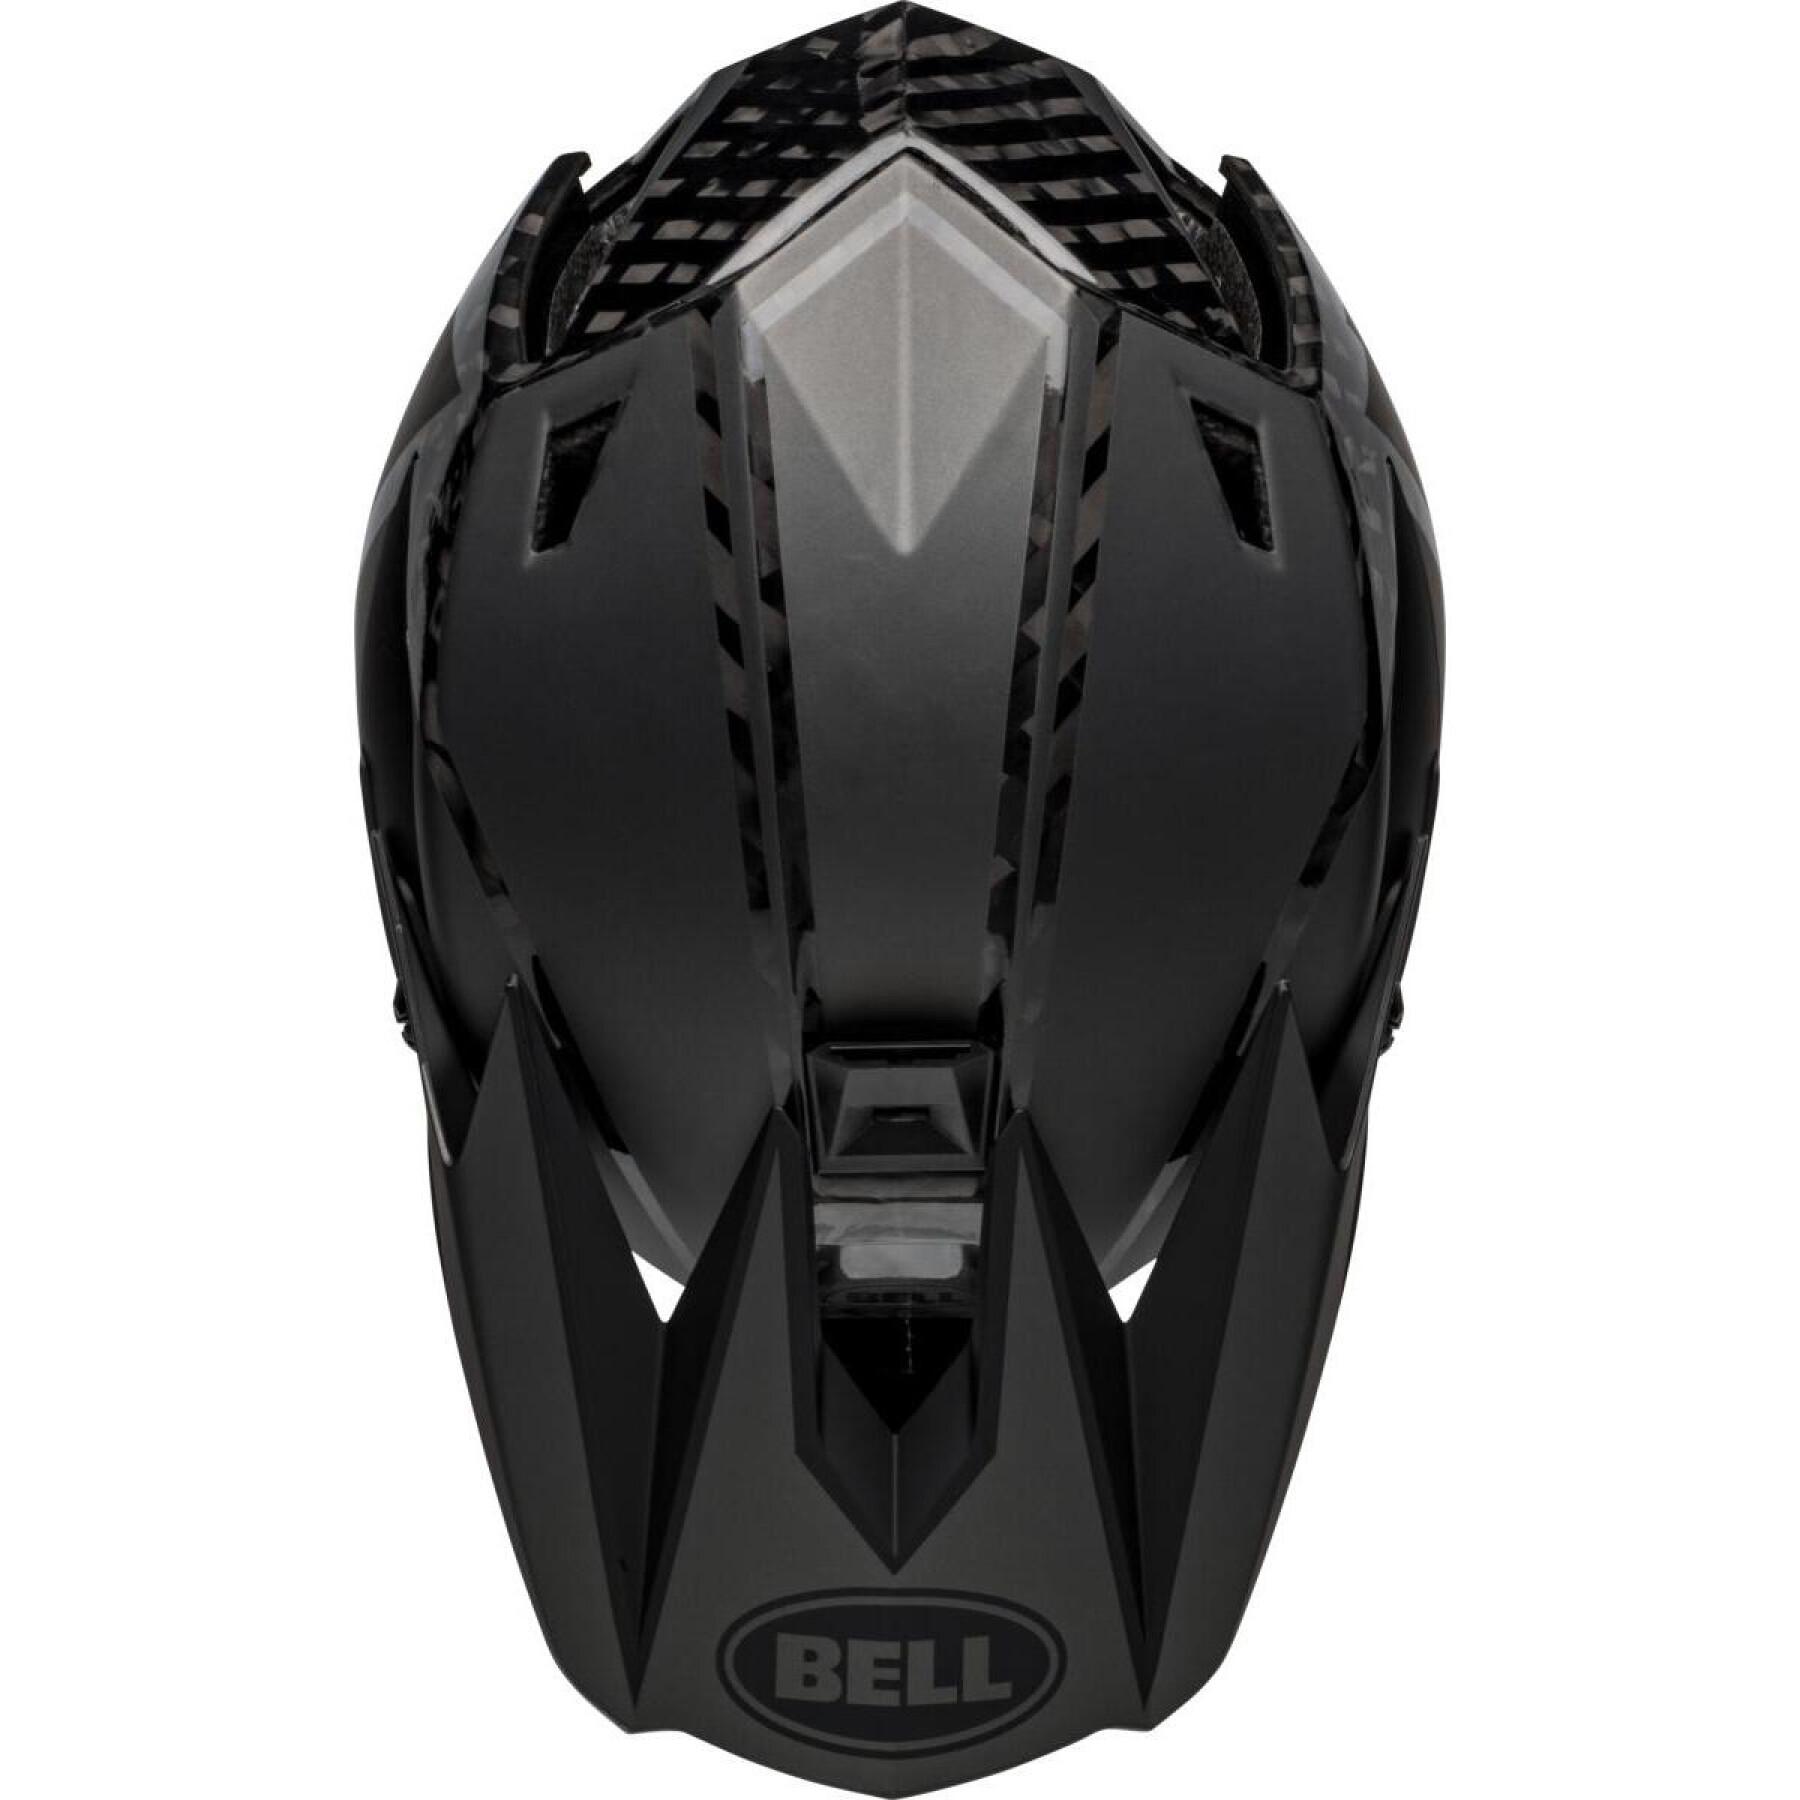 Headset Bell Full-10 Spherical (New My23)